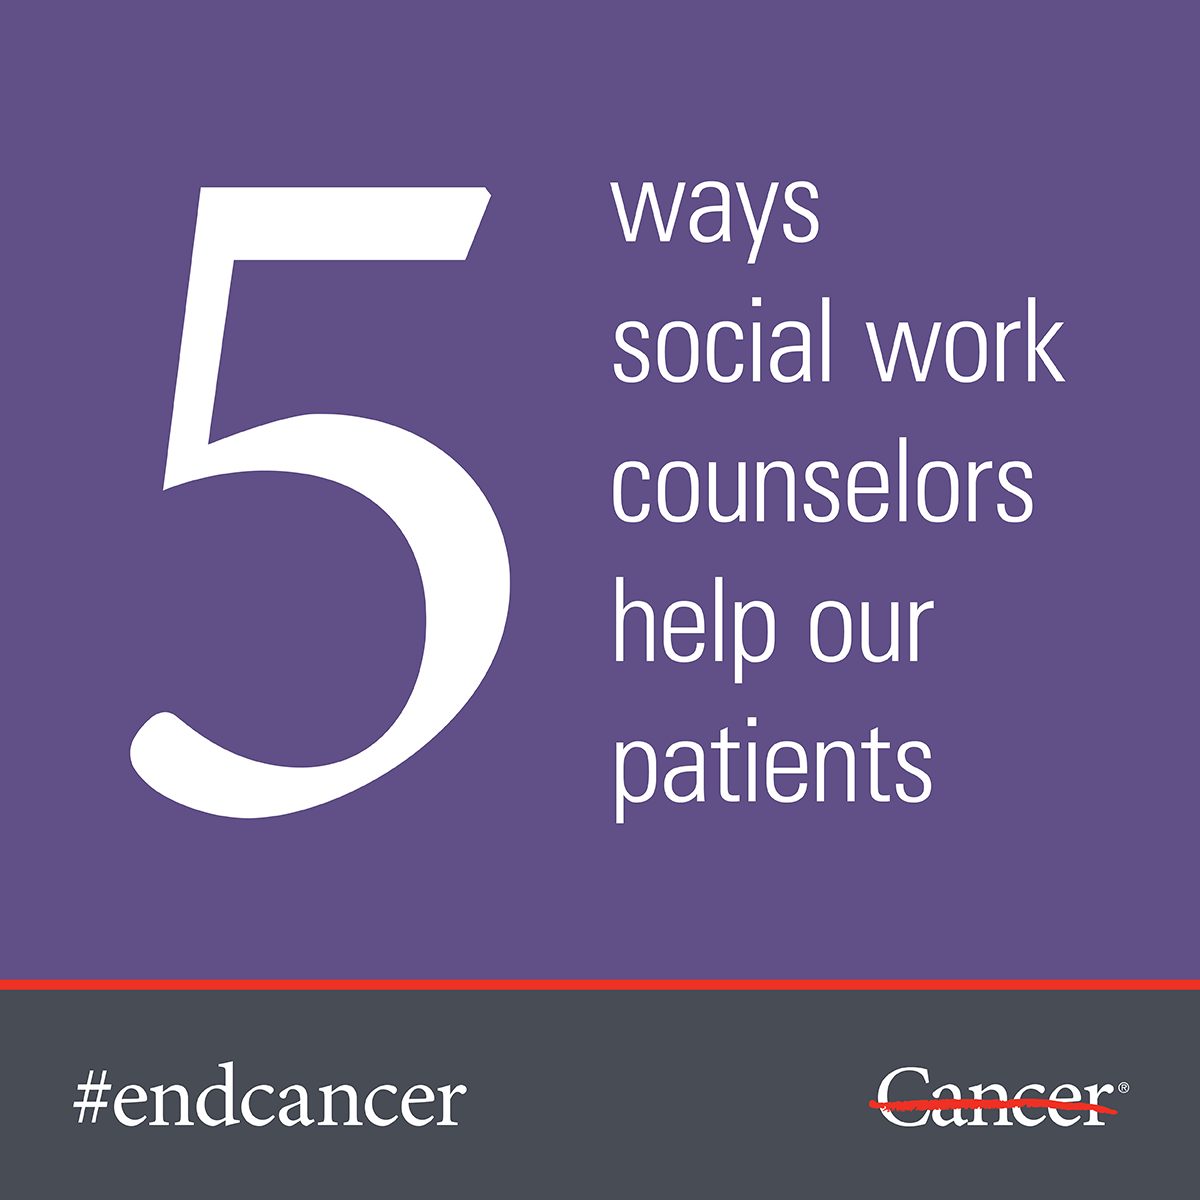 了解MD安德森社会工作辅导员在癌症治疗期间如何提供帮助。